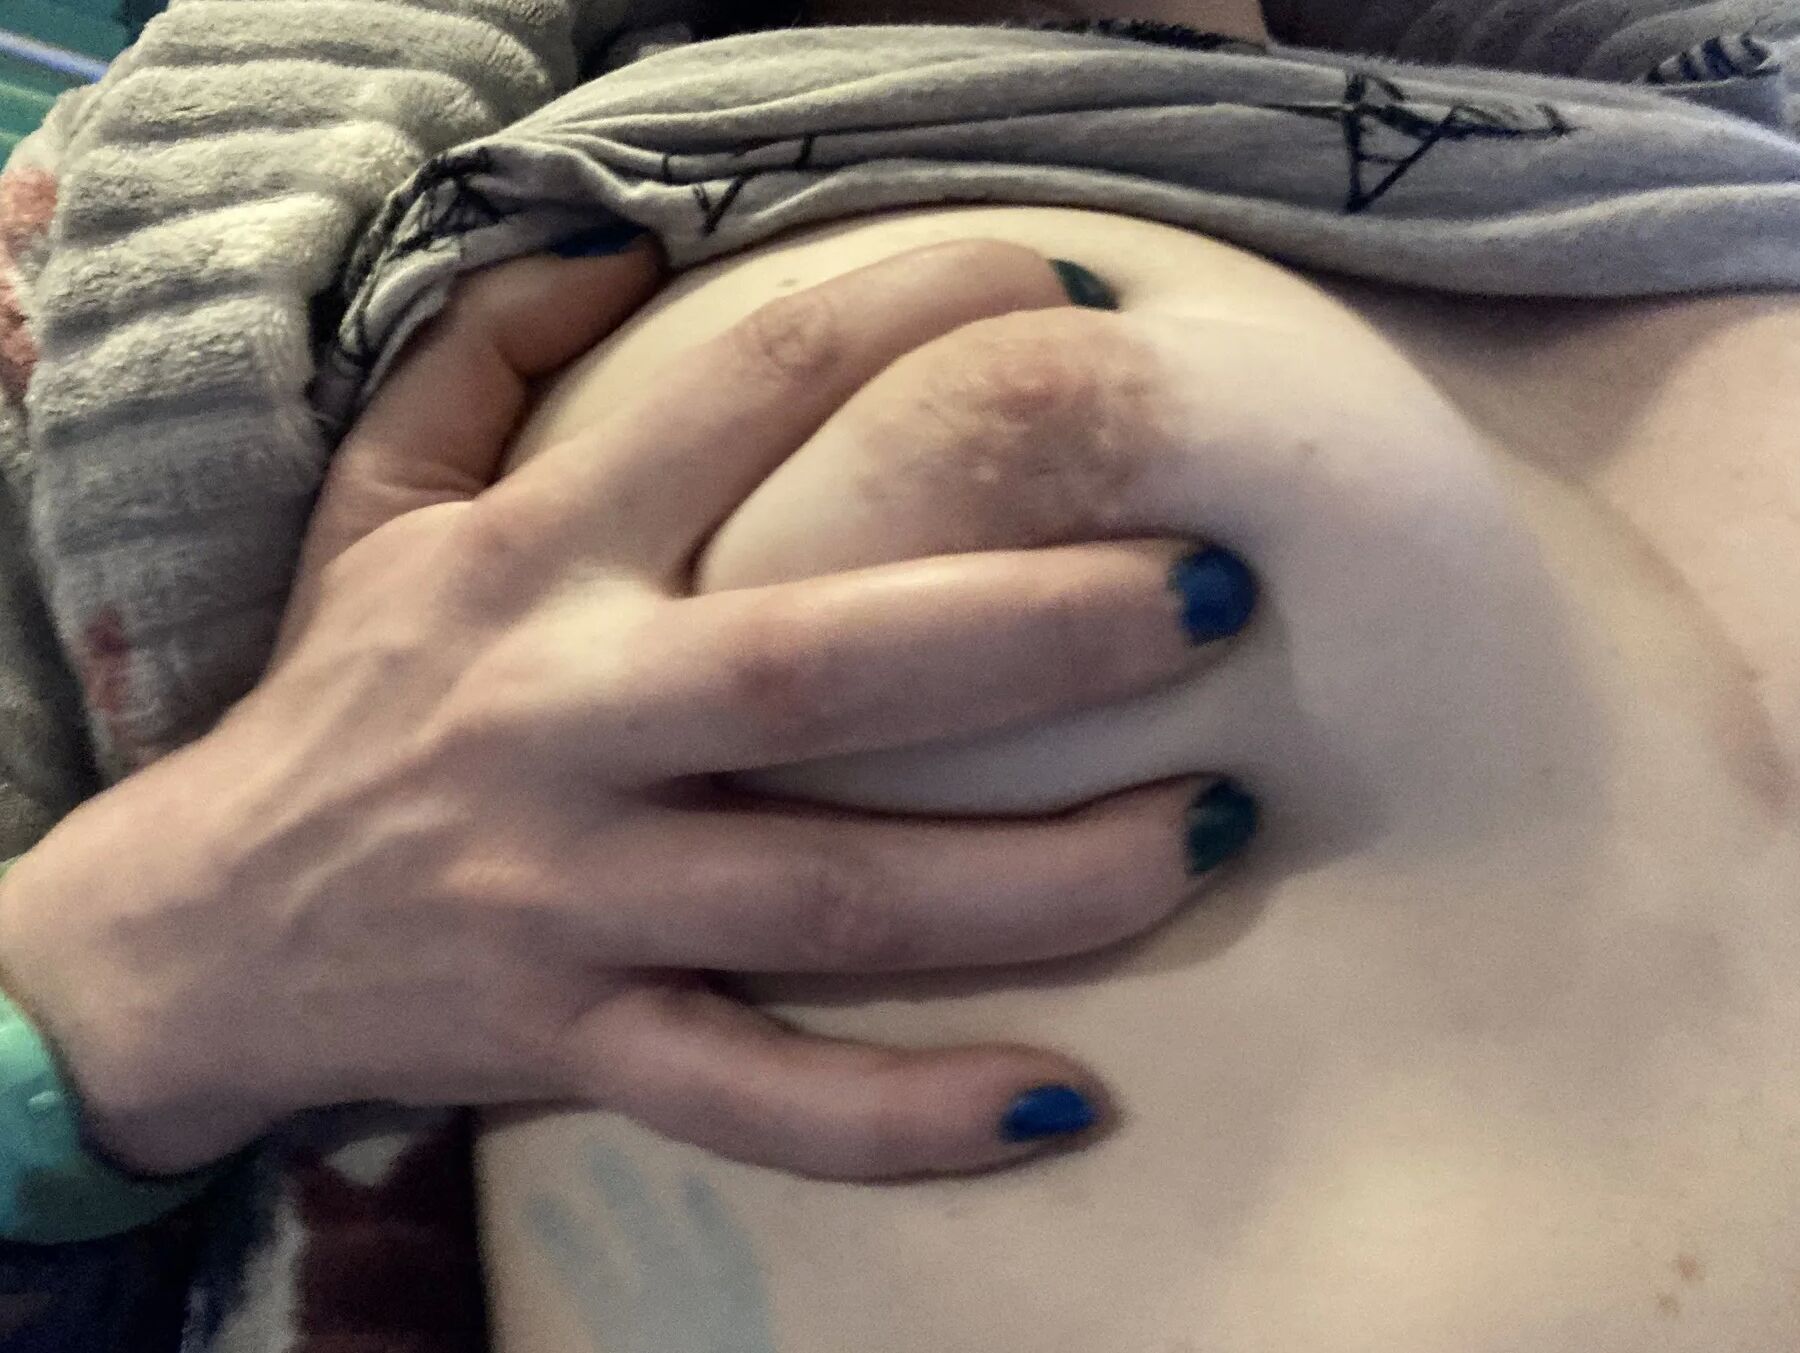 I fucking love my tits!